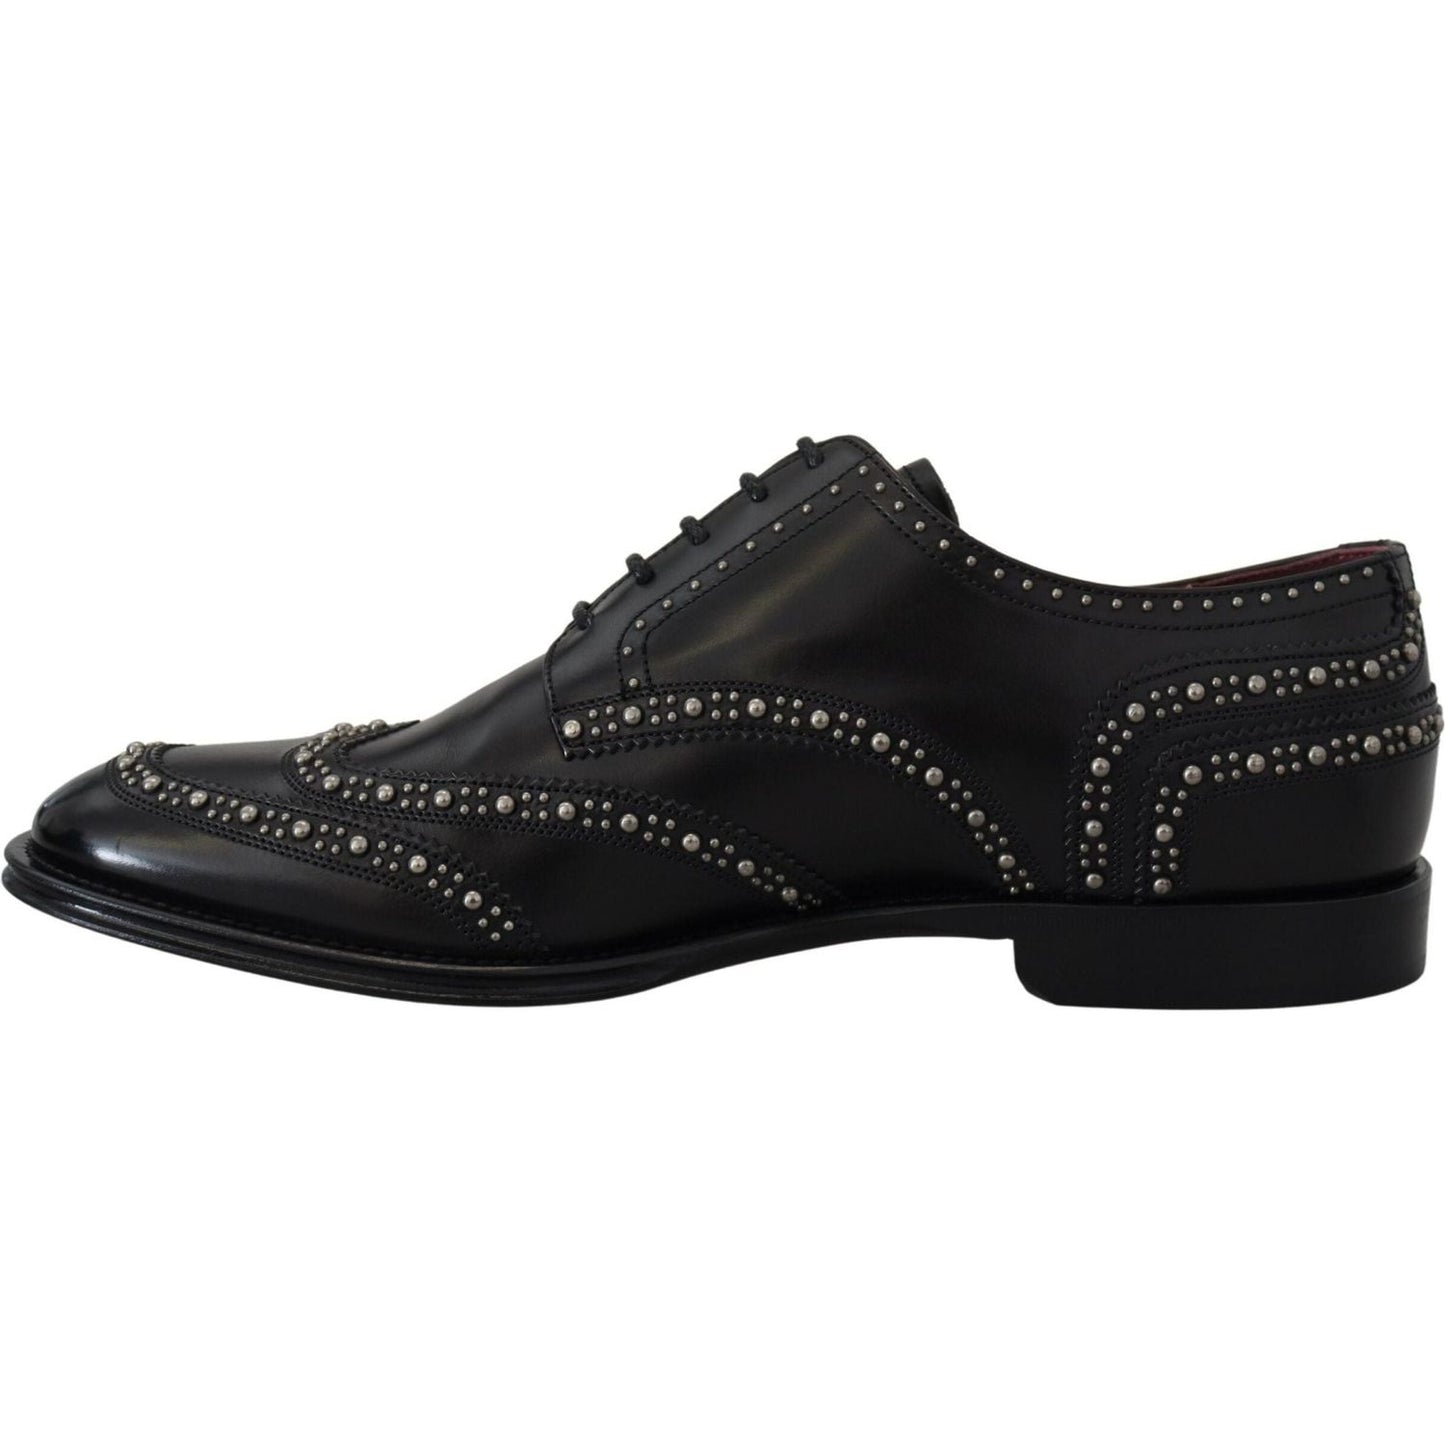 Dolce & Gabbana Elegant Studded Black Derby Shoes black-leather-derby-dress-studded-shoes